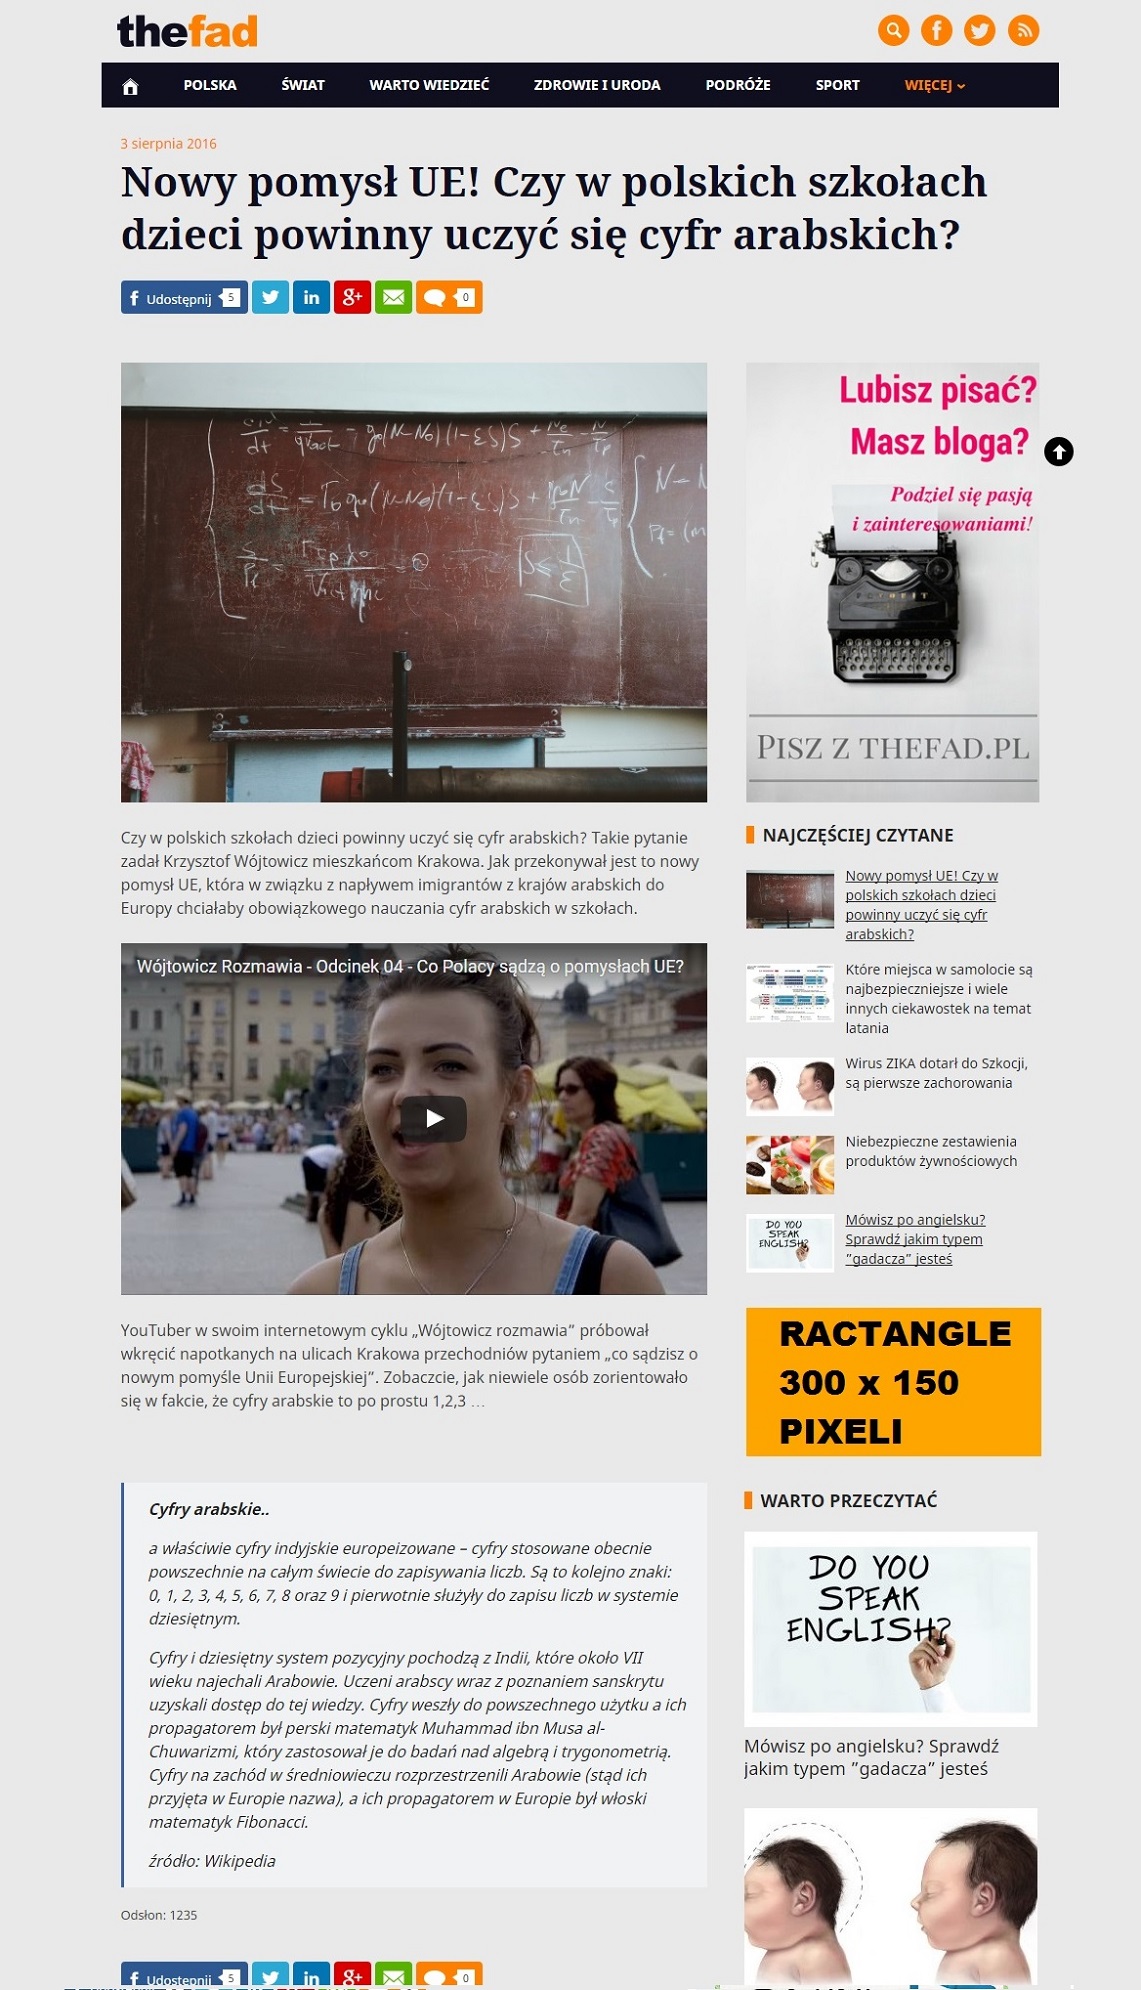 Biuro reklamy TheFad.pl: Wizualizacja reklam, banery 300x150